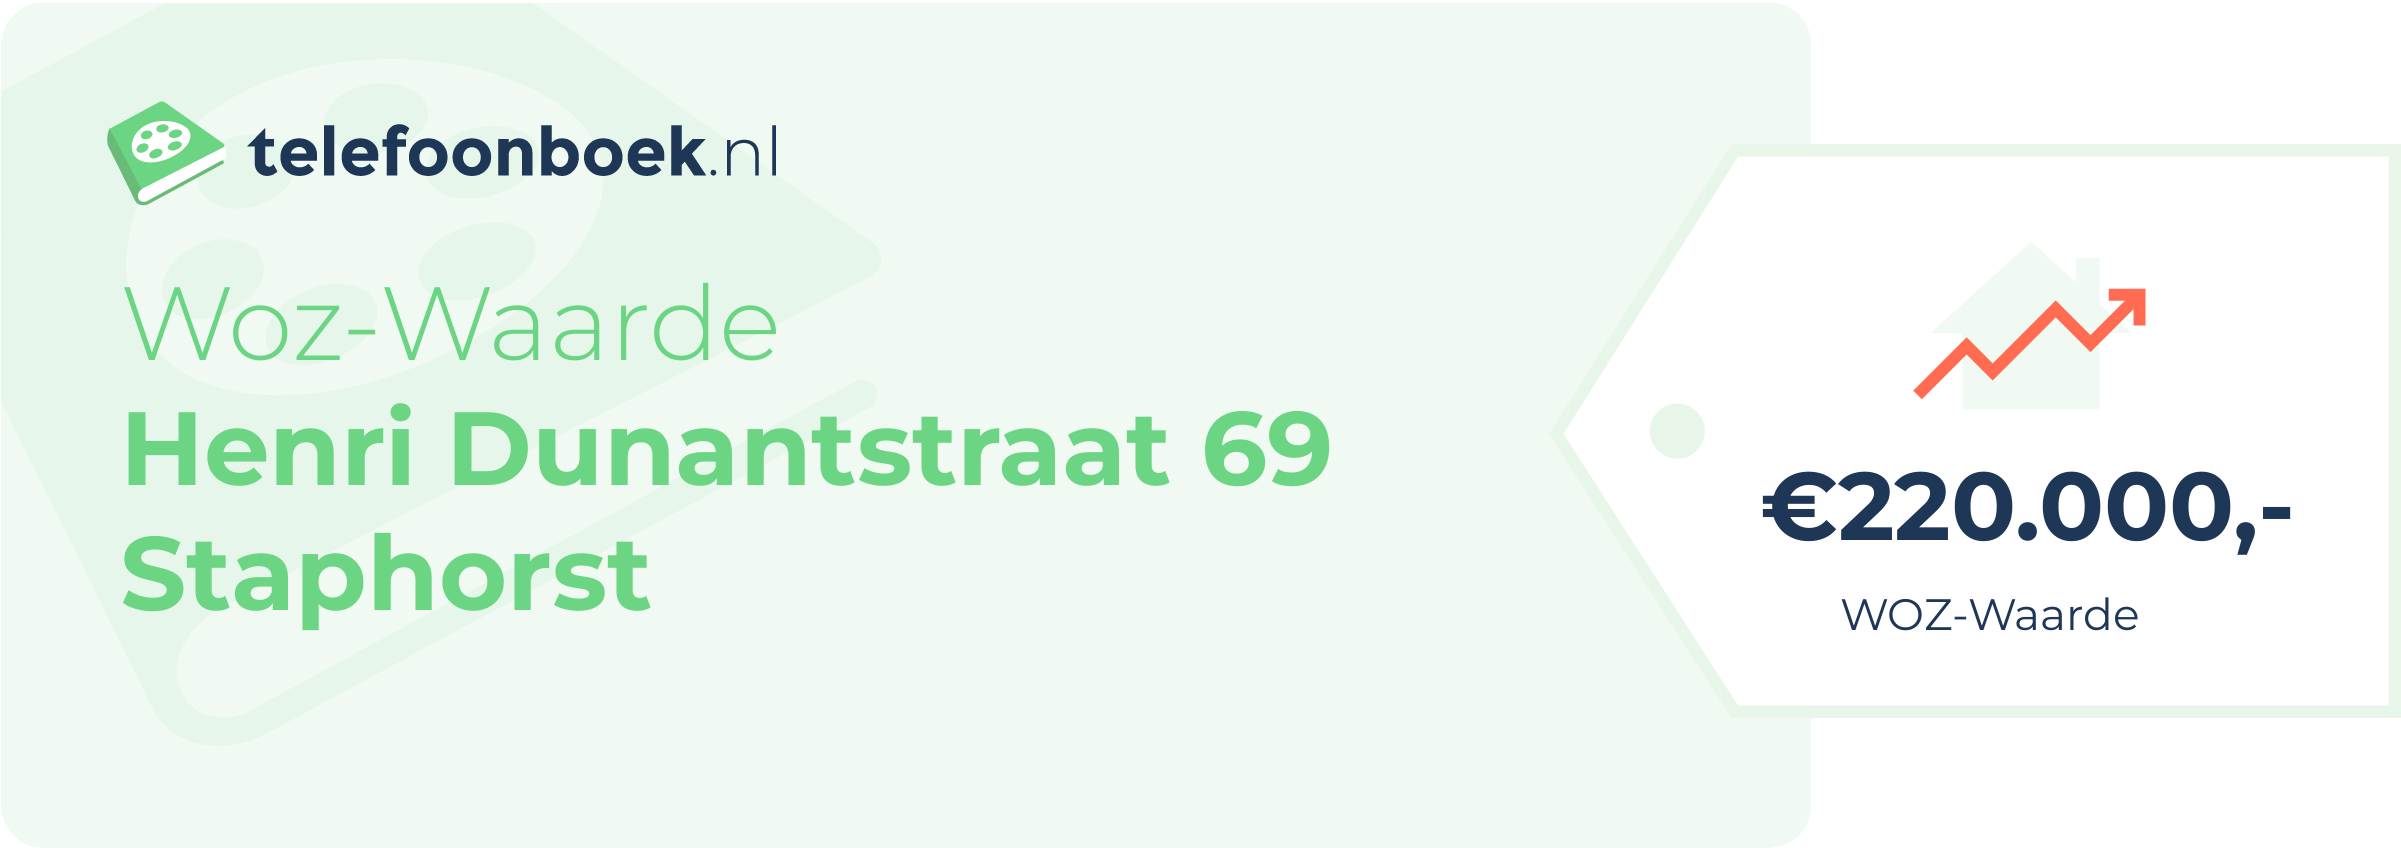 WOZ-waarde Henri Dunantstraat 69 Staphorst